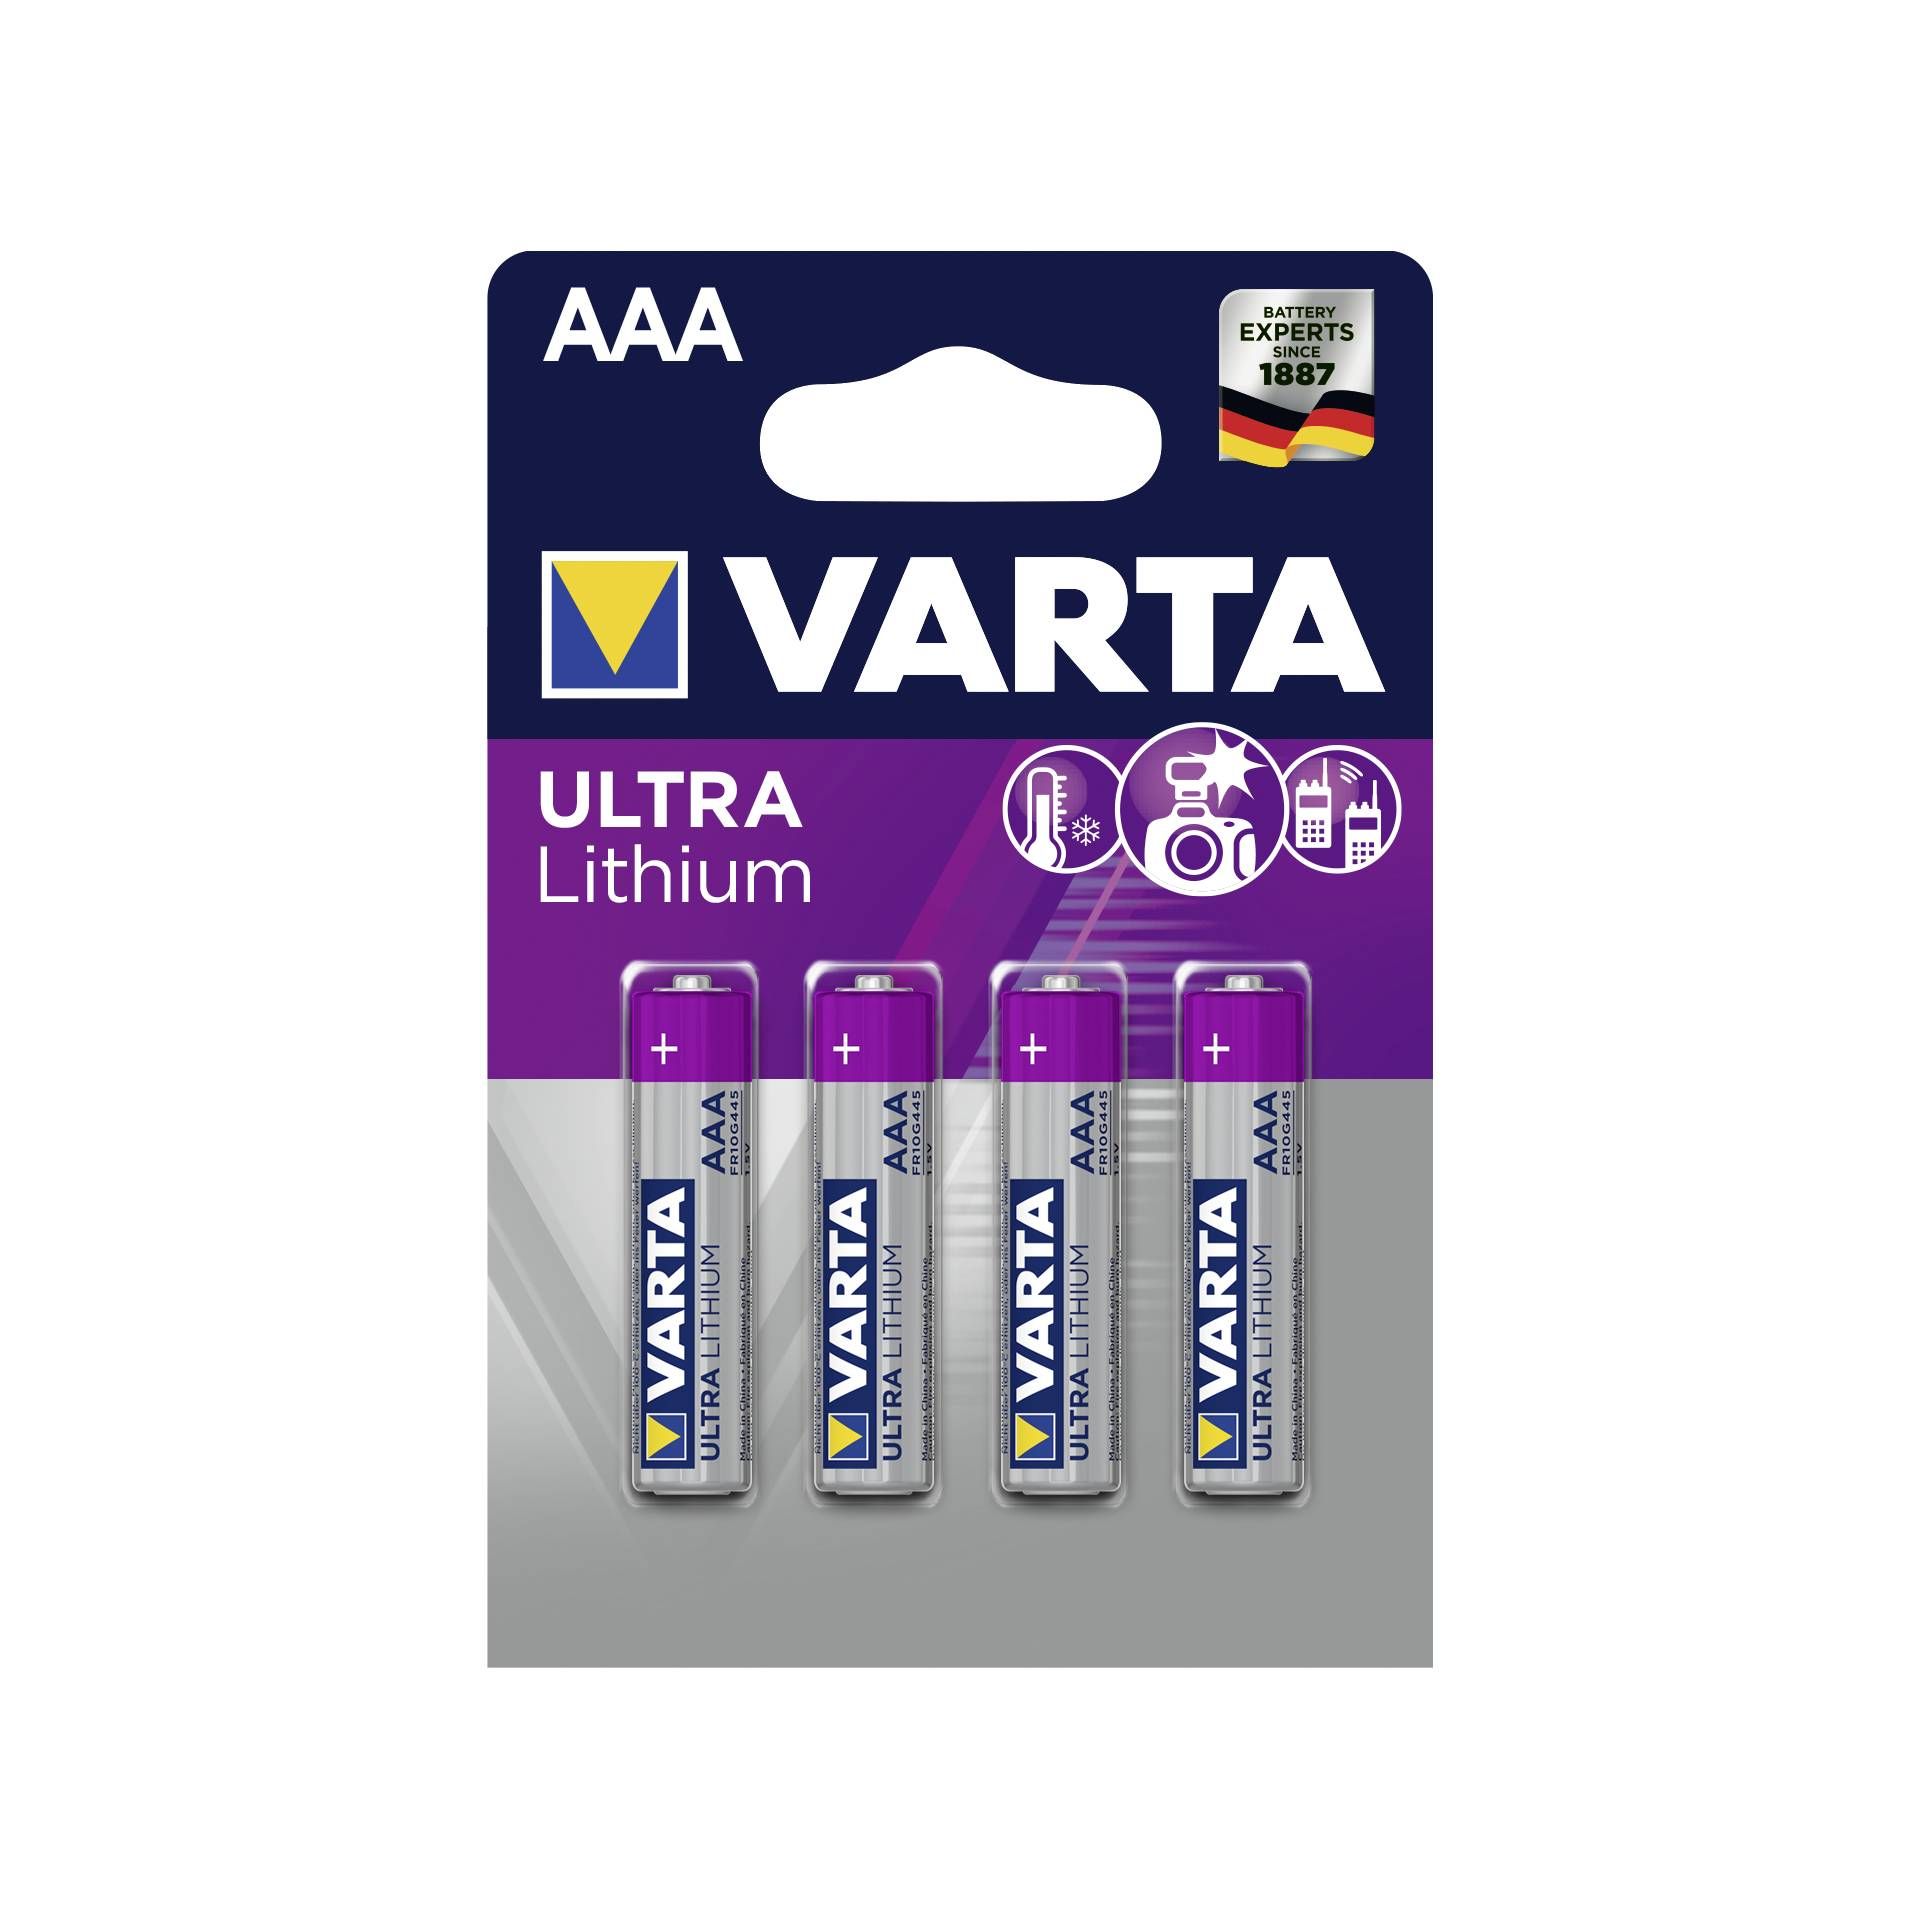 1x4 Varta Lithium Micro AAA LR 03